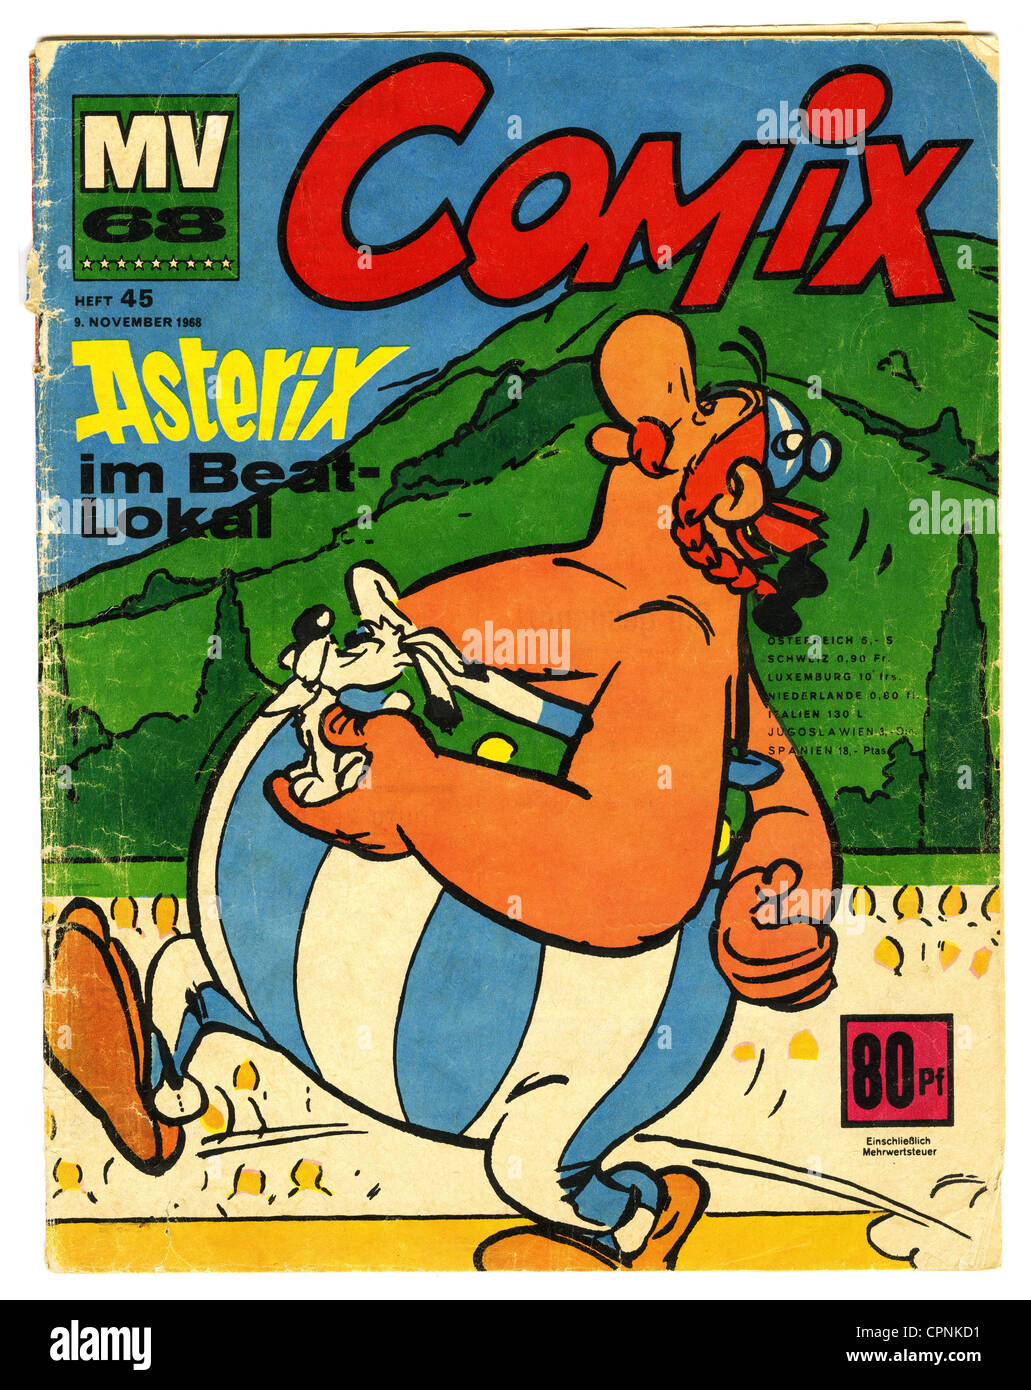 Literatura, cómics, 'Asterix im Beat-Lokal' (Asterix en el Beat Club), una de las primeras publicaciones alemanas de Asterix, foto de portada, Obelix e Idefix, cómics, MV 68 Comix, publicado por la editorial Ehapa, Stuttgart, Alemania, 1968, Derechos adicionales-Clearences-no disponible Foto de stock